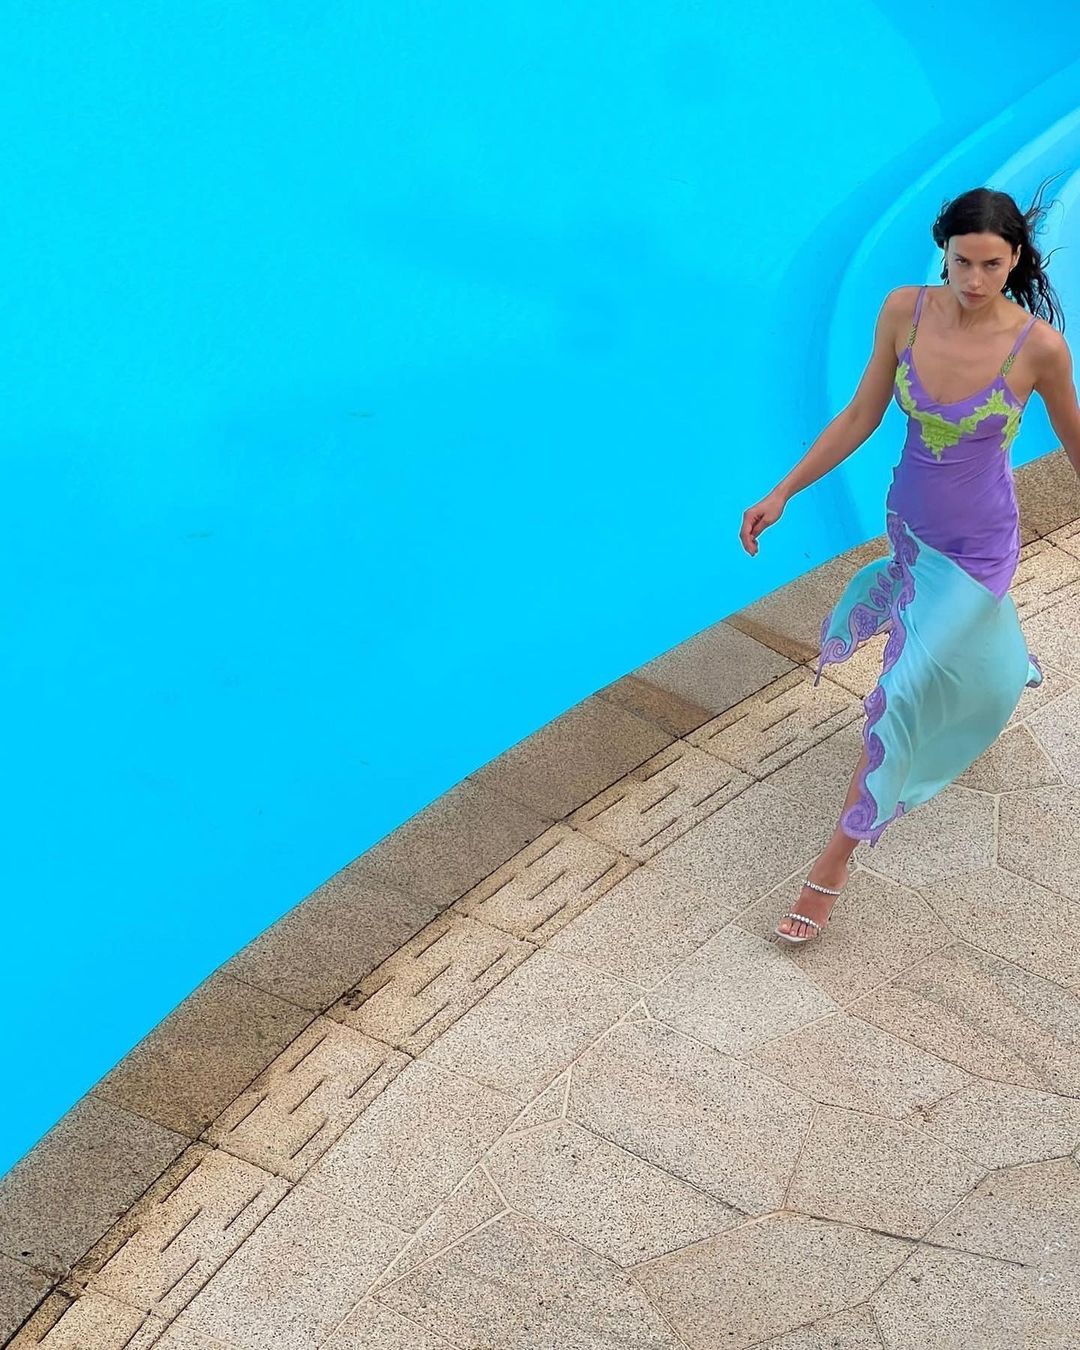 Irina Shayk’s Versace by The Pool!